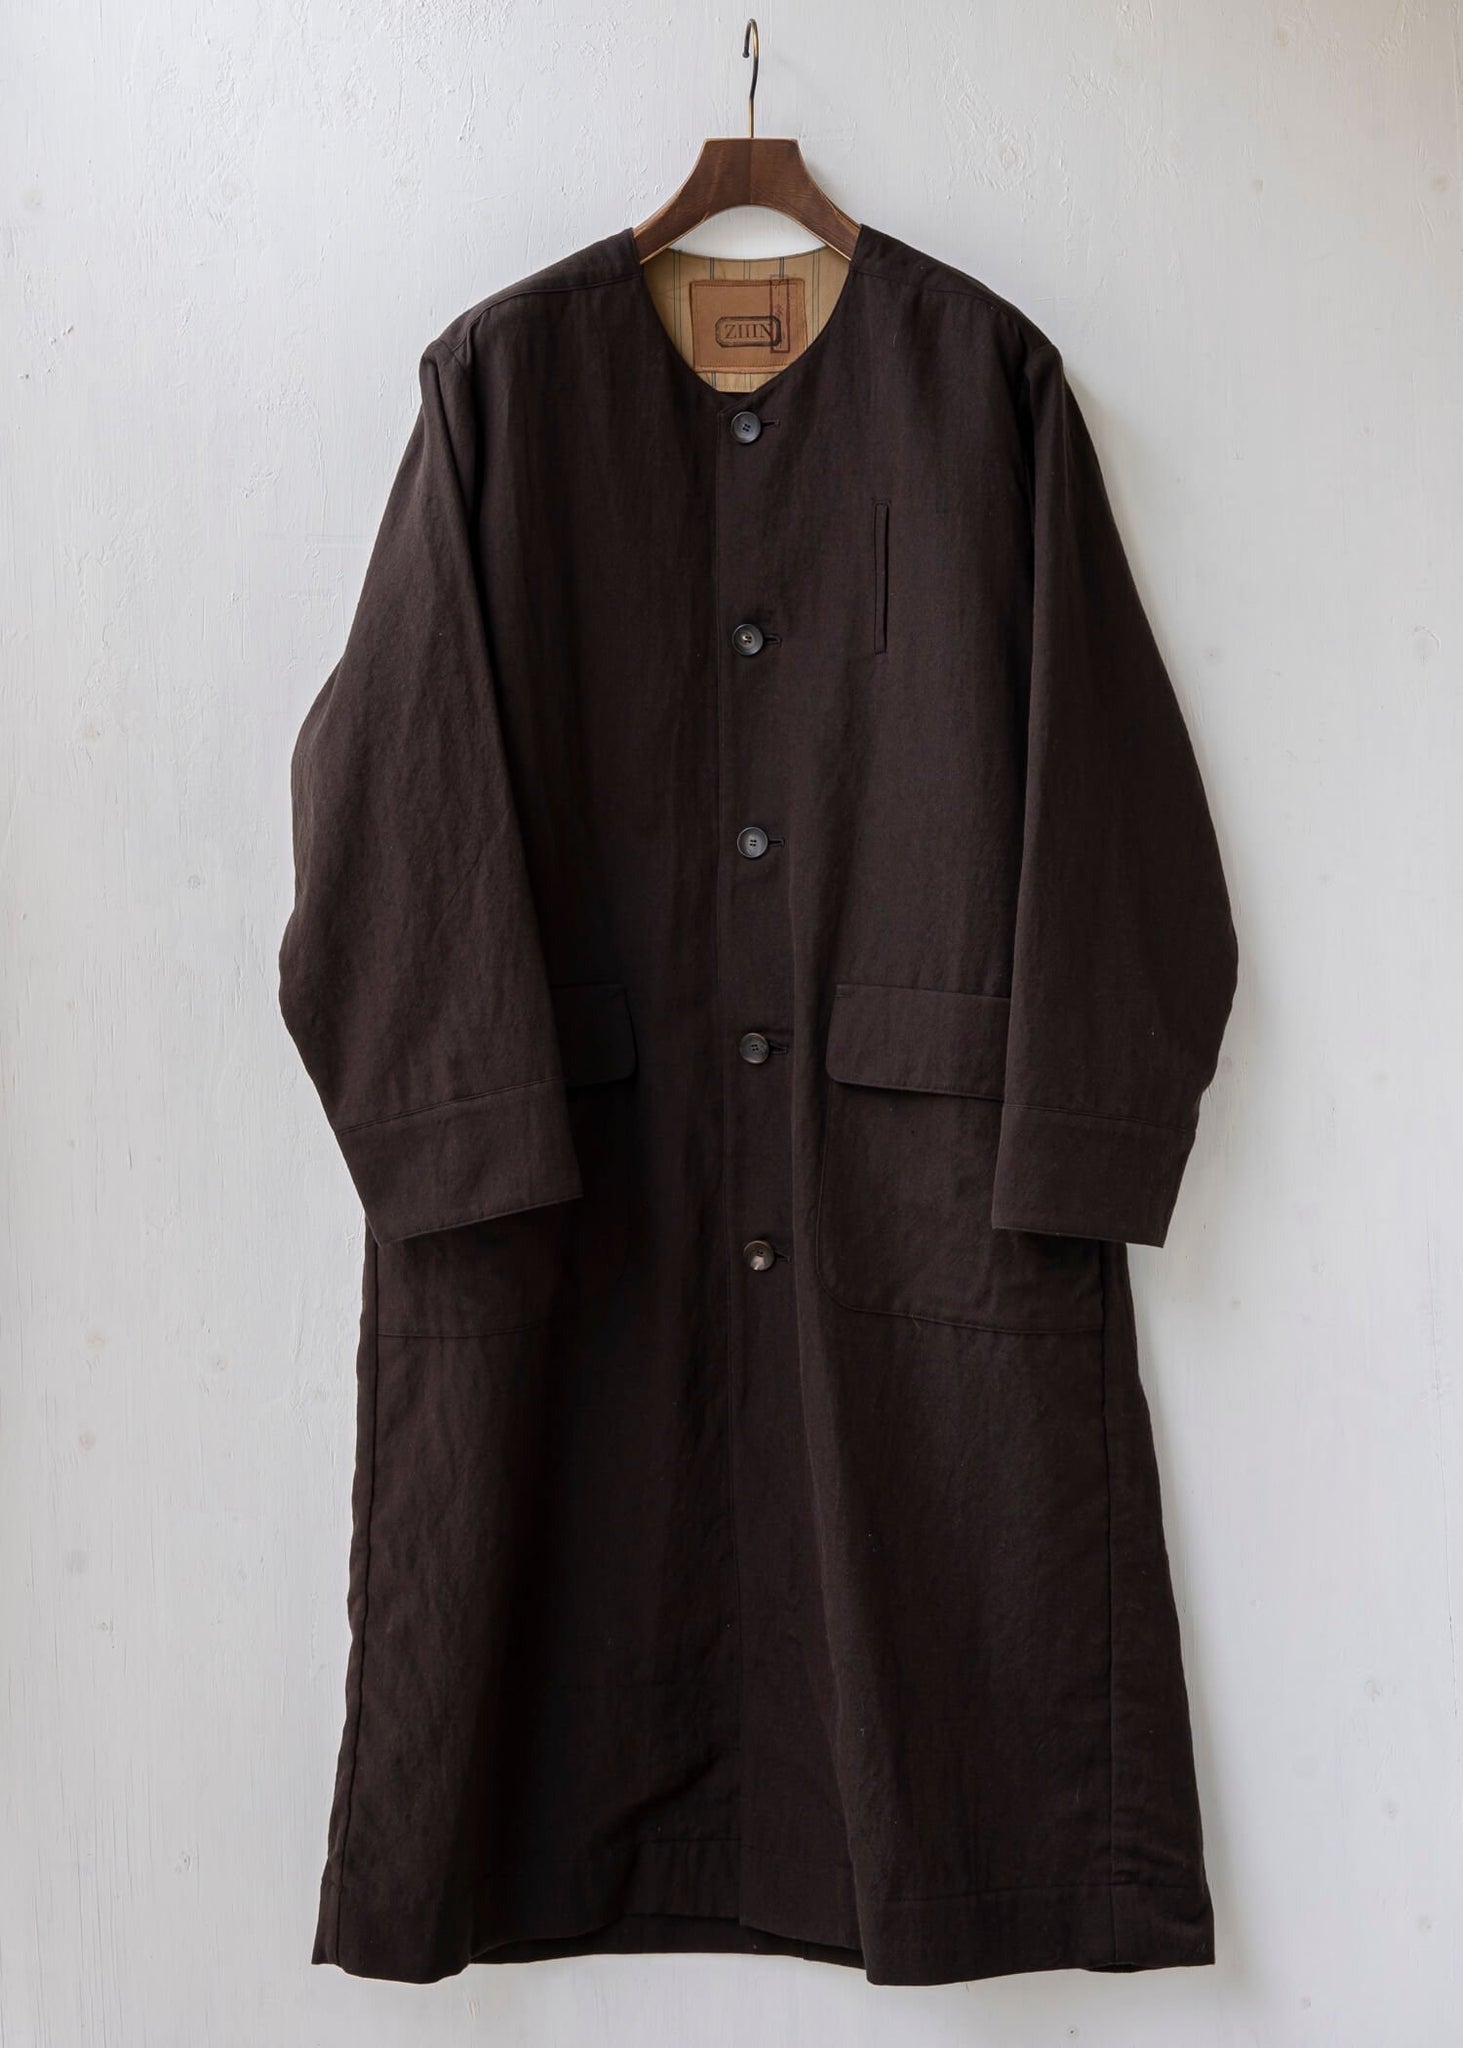 ZIIIN "SANZOH" Desert coat / DARK BROWN